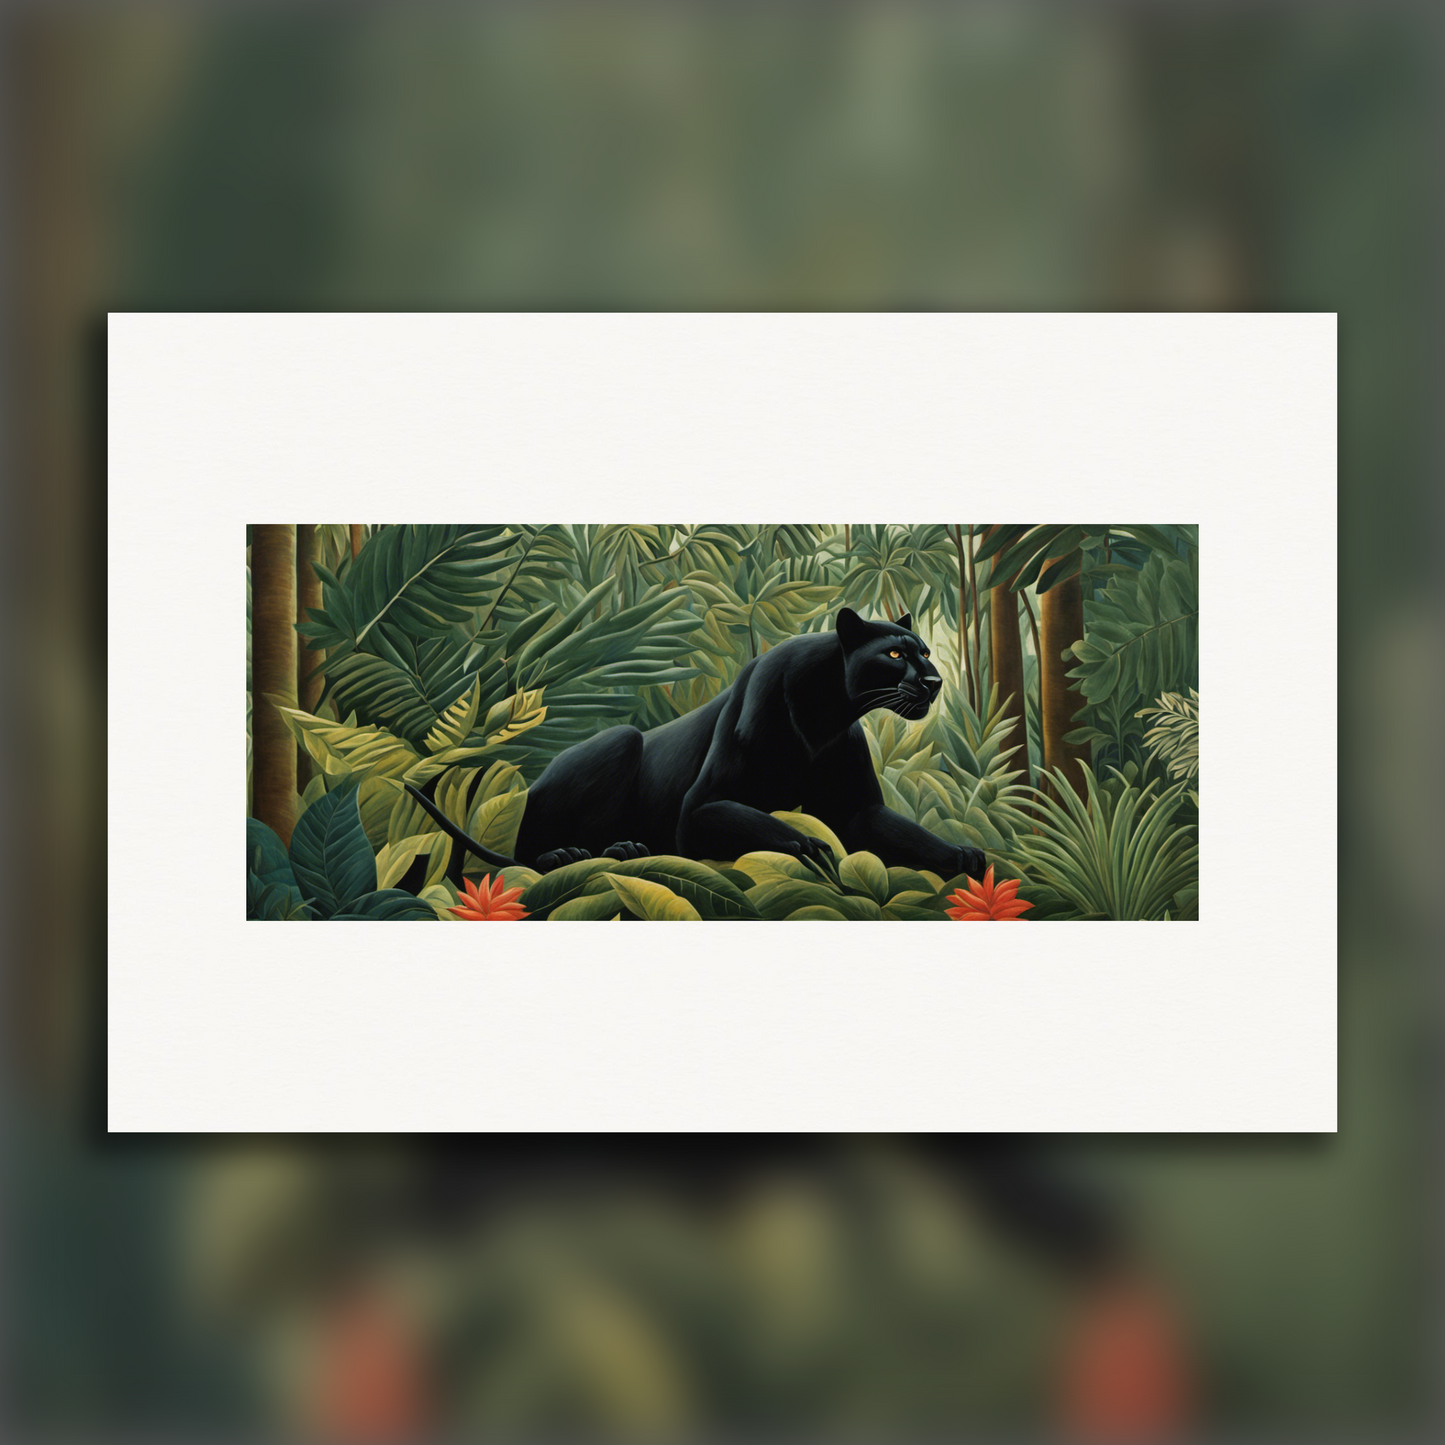 Affiche IA - Le Douanier Rousseau, Une panthère noire dans la jungle 2 - 2977319408